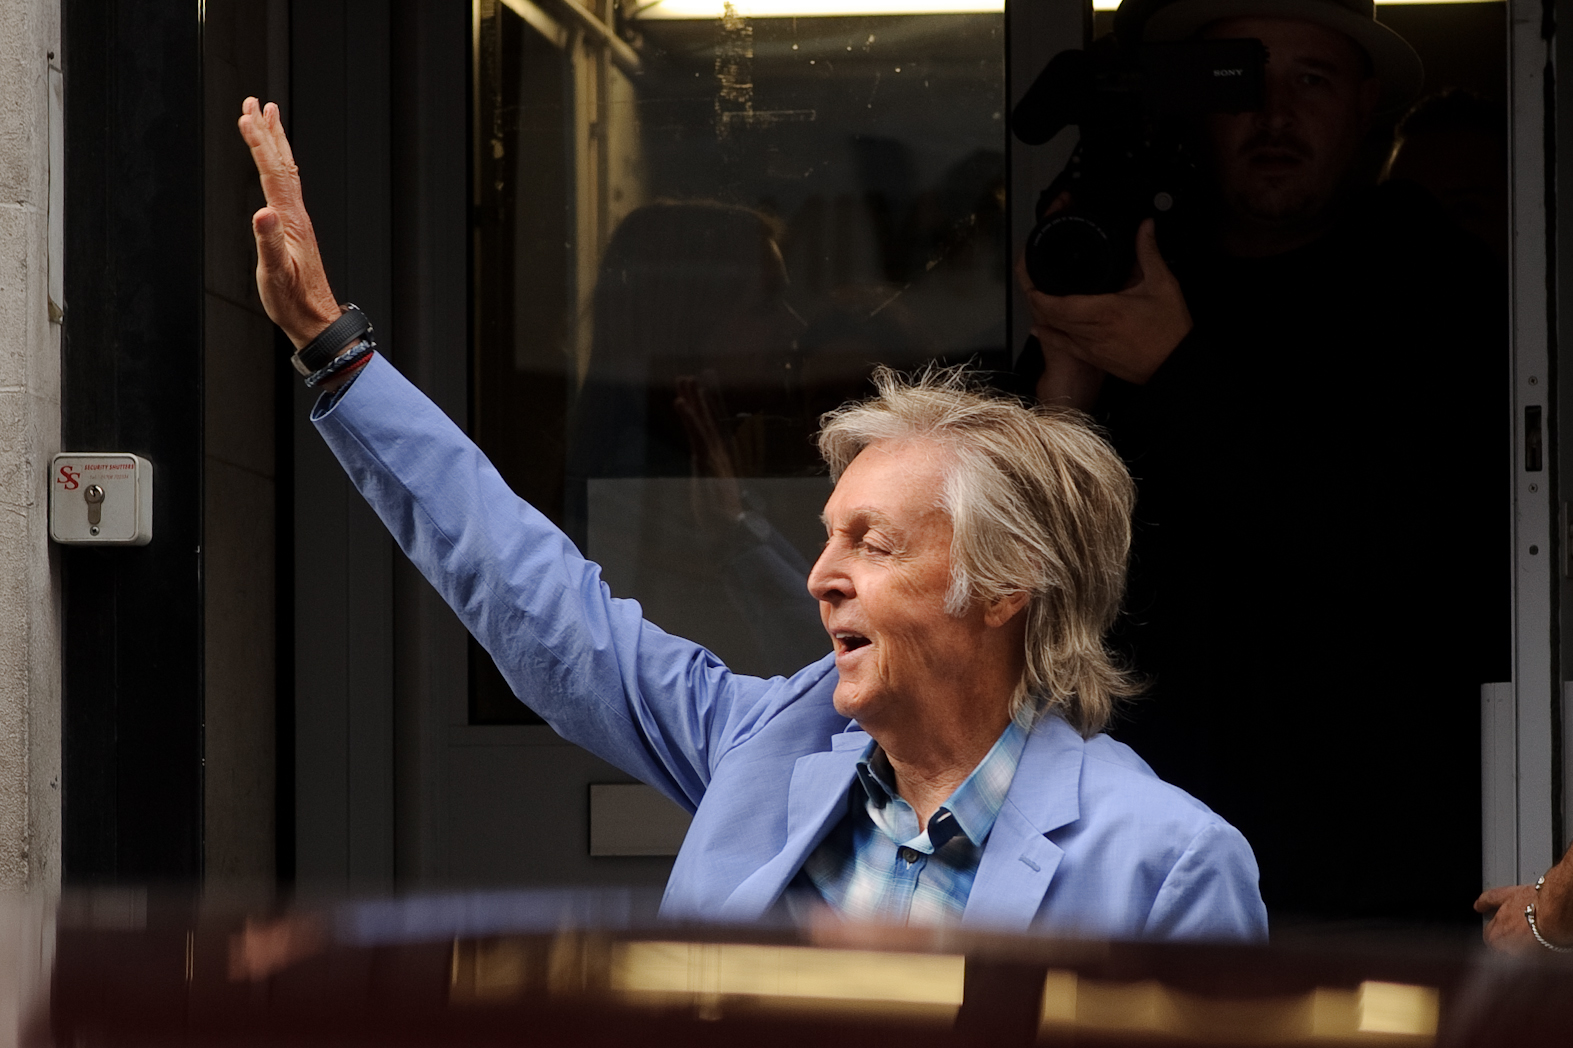 Paul McCartney waving